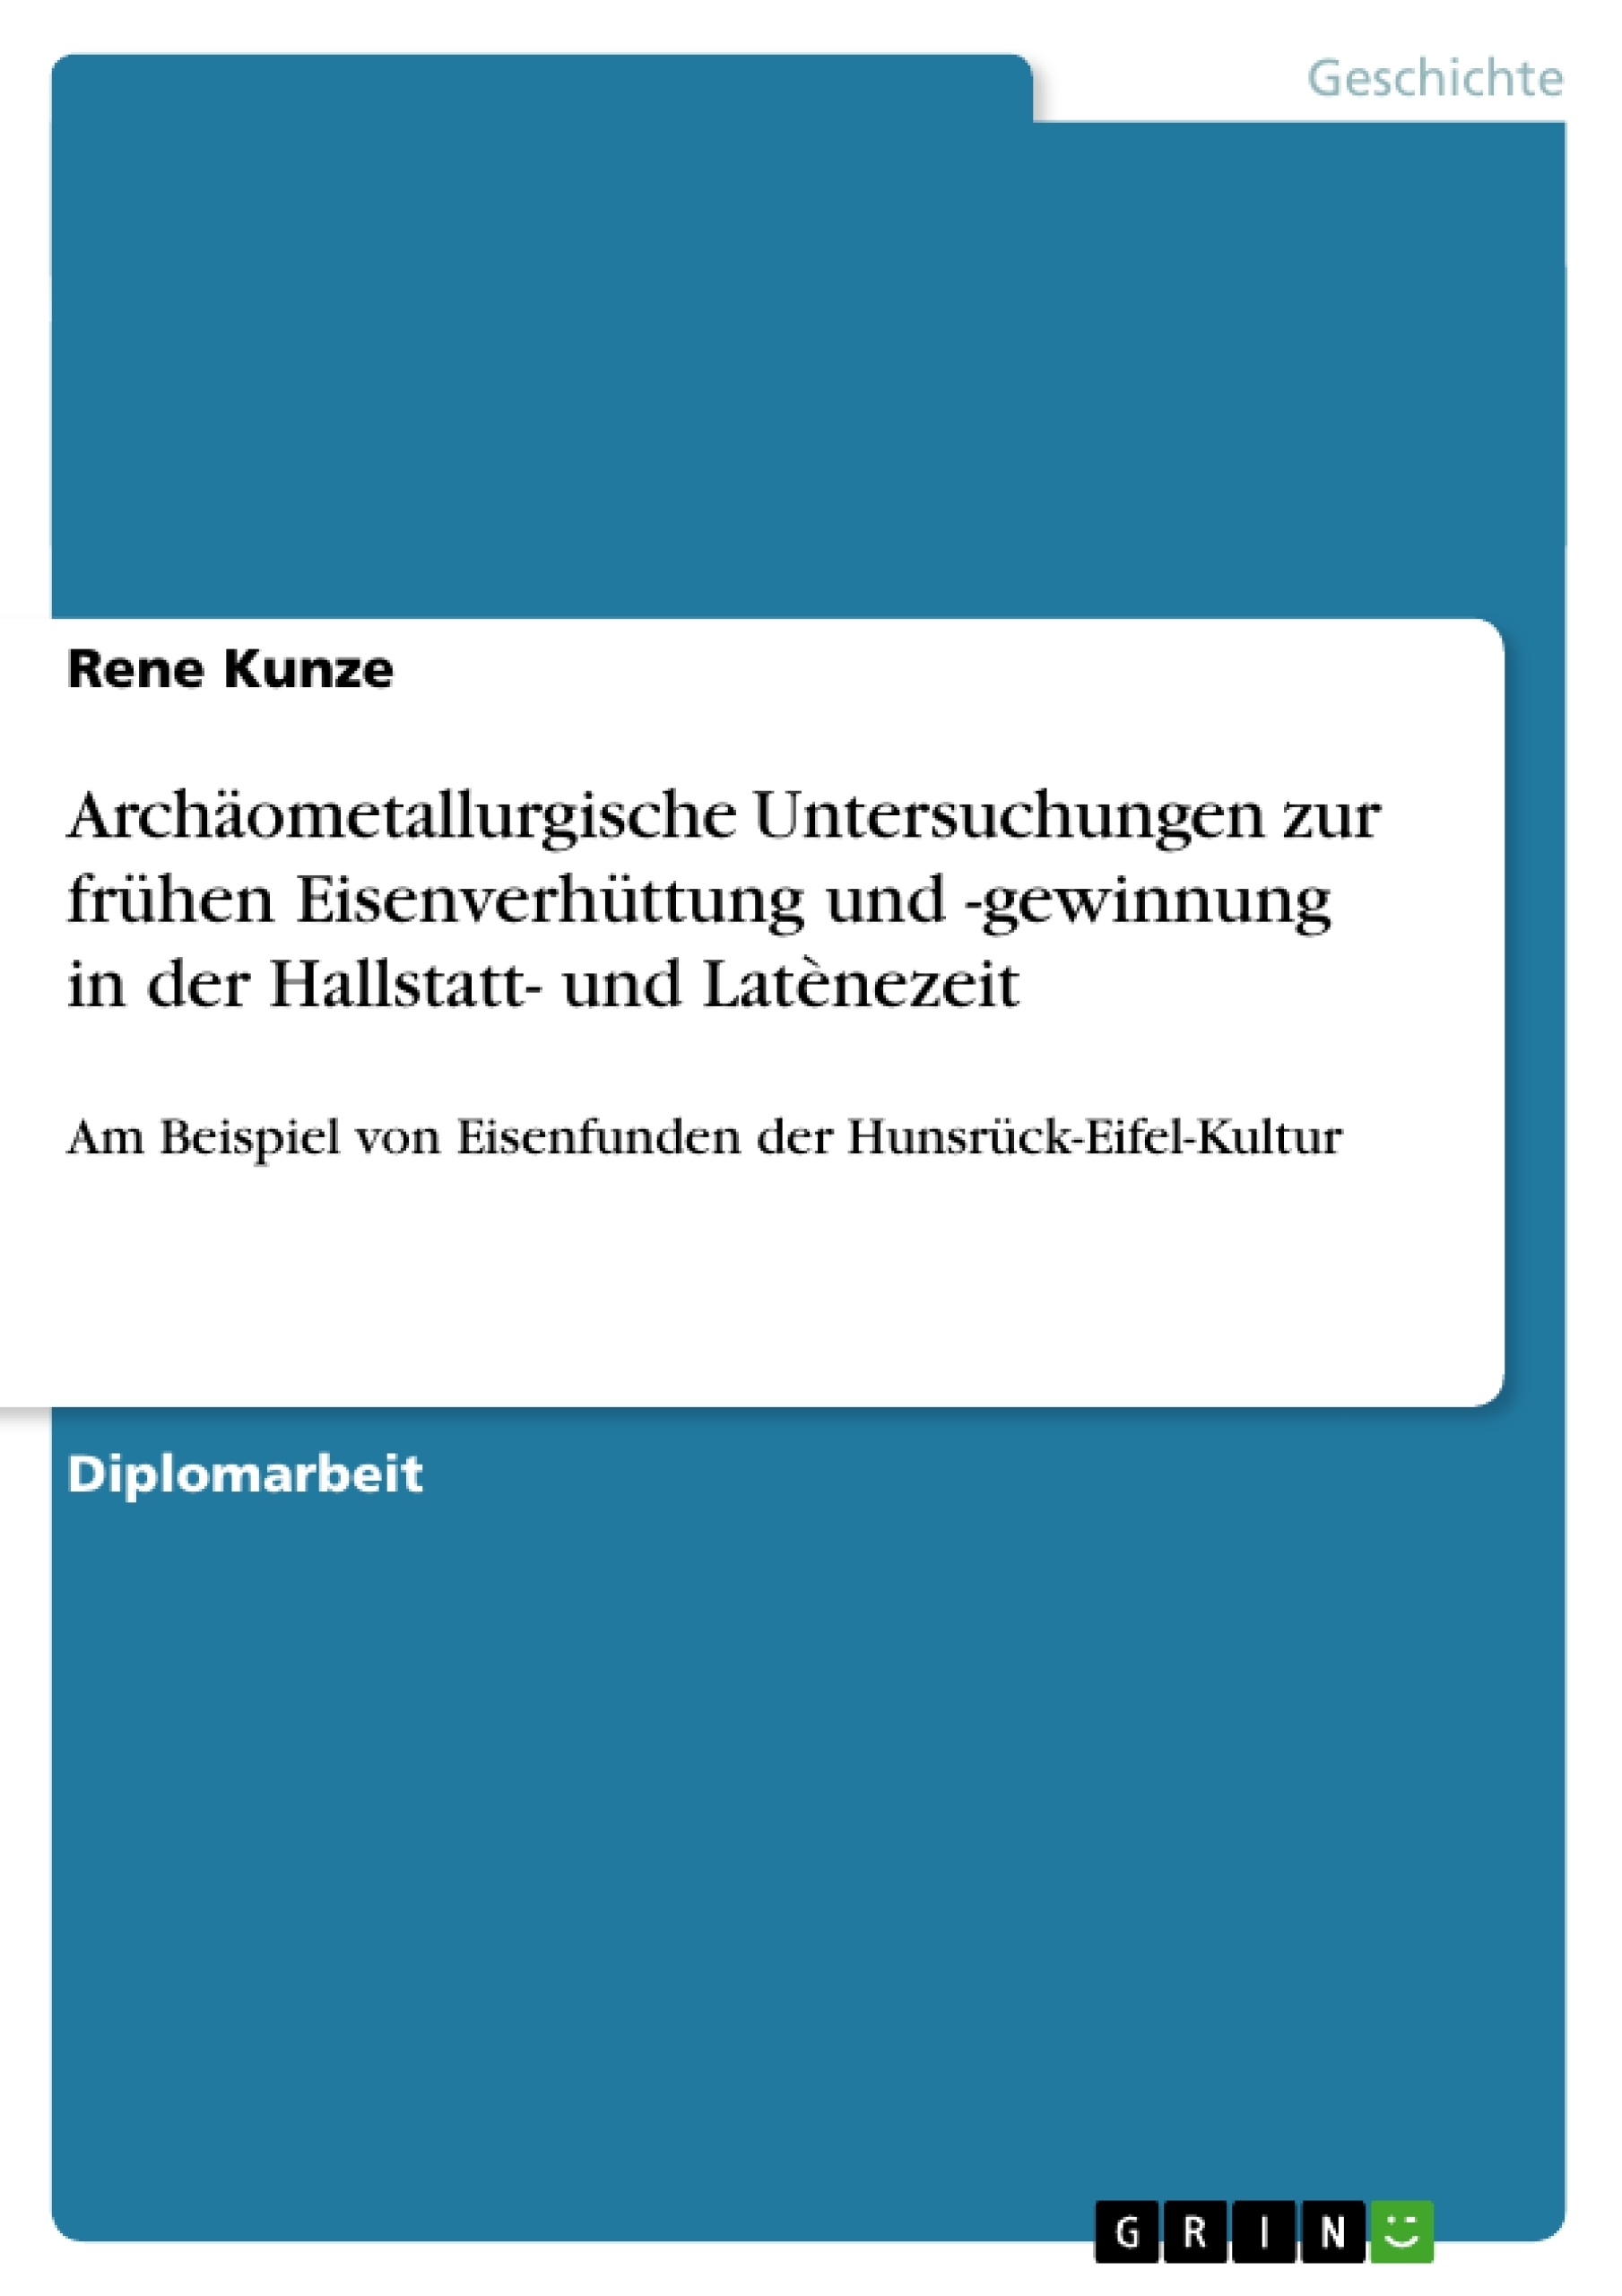 Title: Archäometallurgische Untersuchungen zur frühen Eisenverhüttung und -gewinnung in der Hallstatt- und Latènezeit